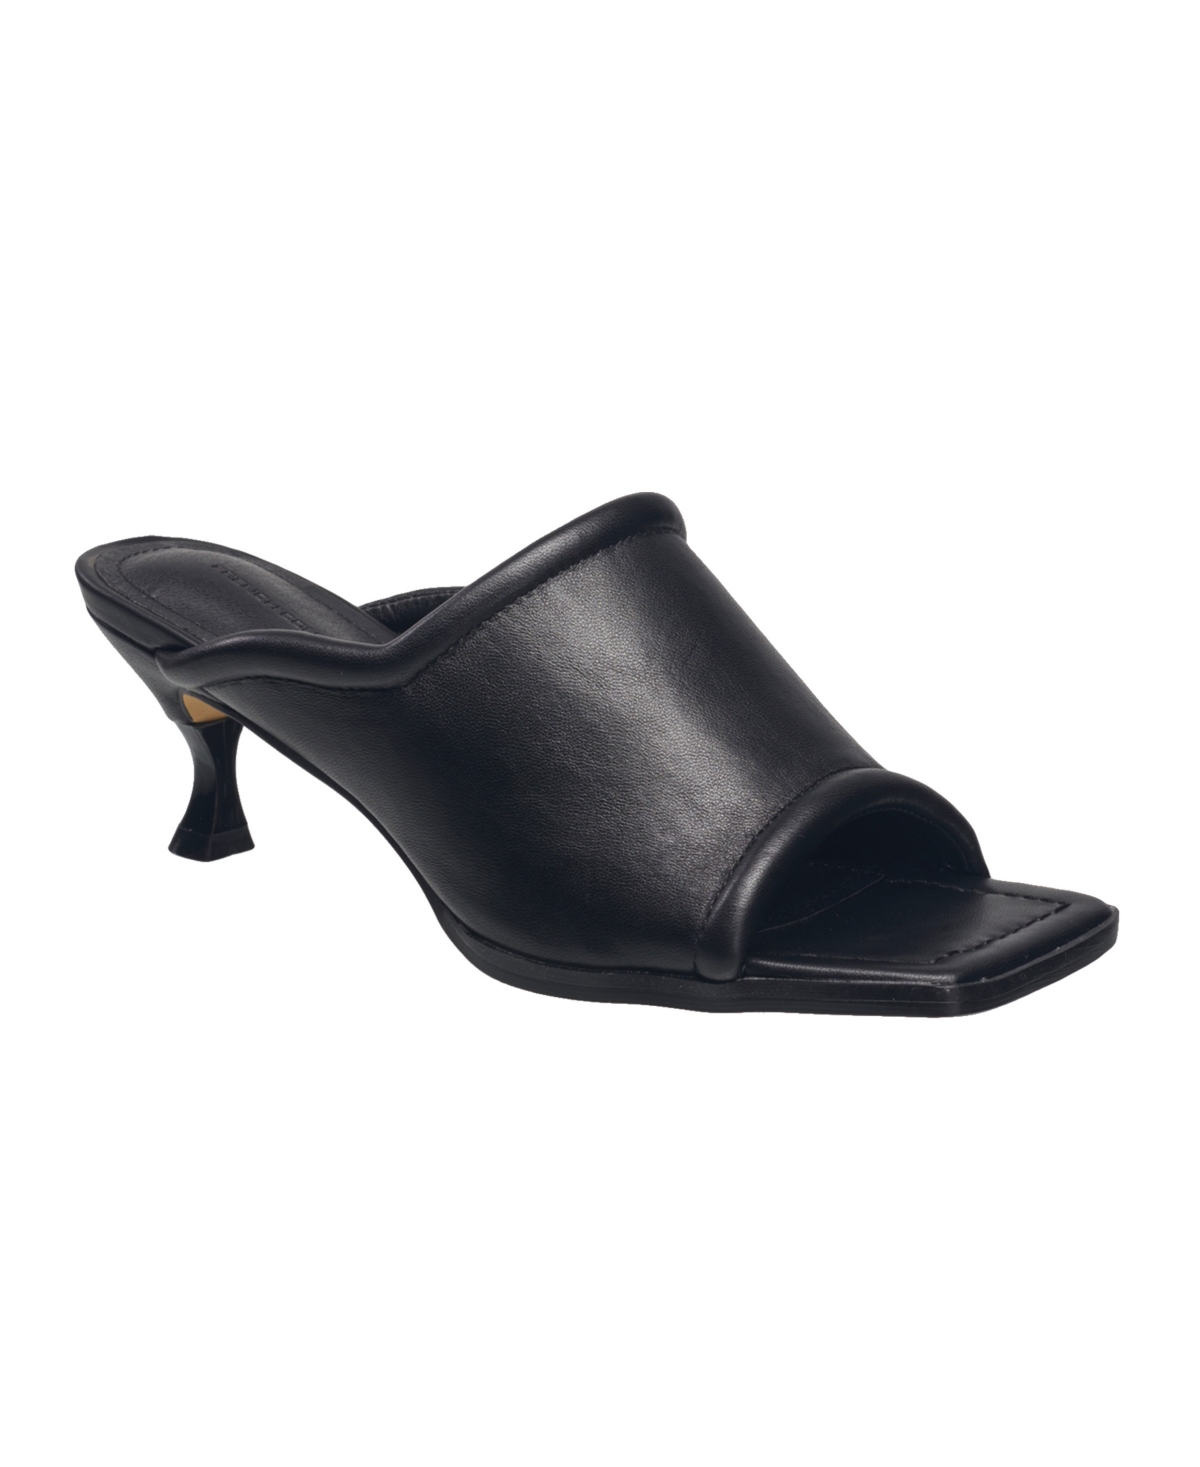 Women's Candice Open Toe Heel Sandals - Black